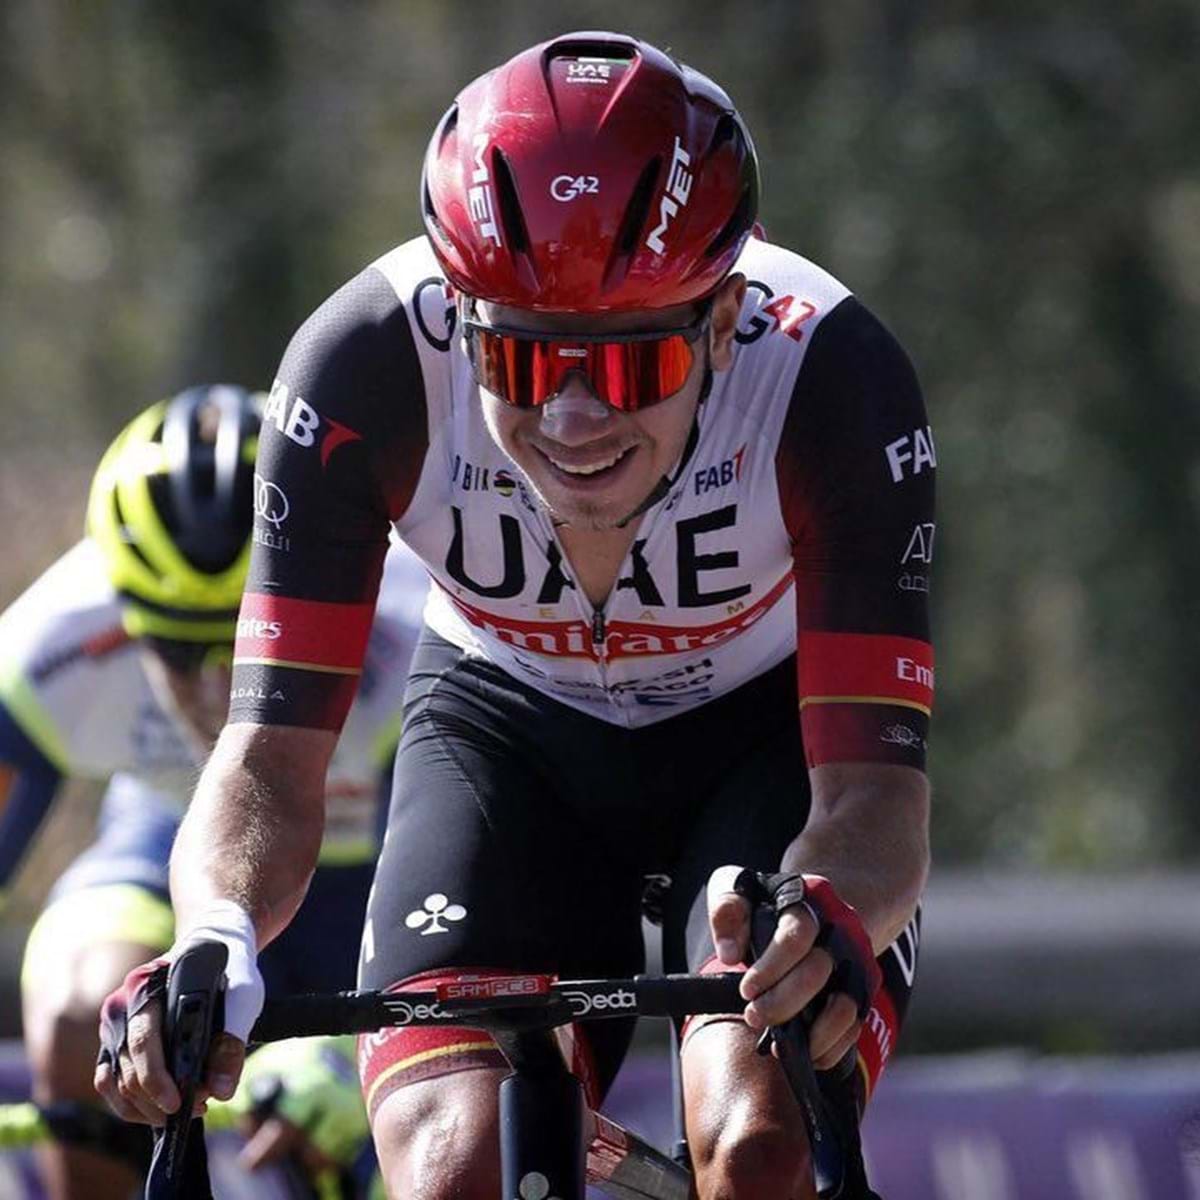 Selecionador português de ciclismo de pista: Fizemos um excelente